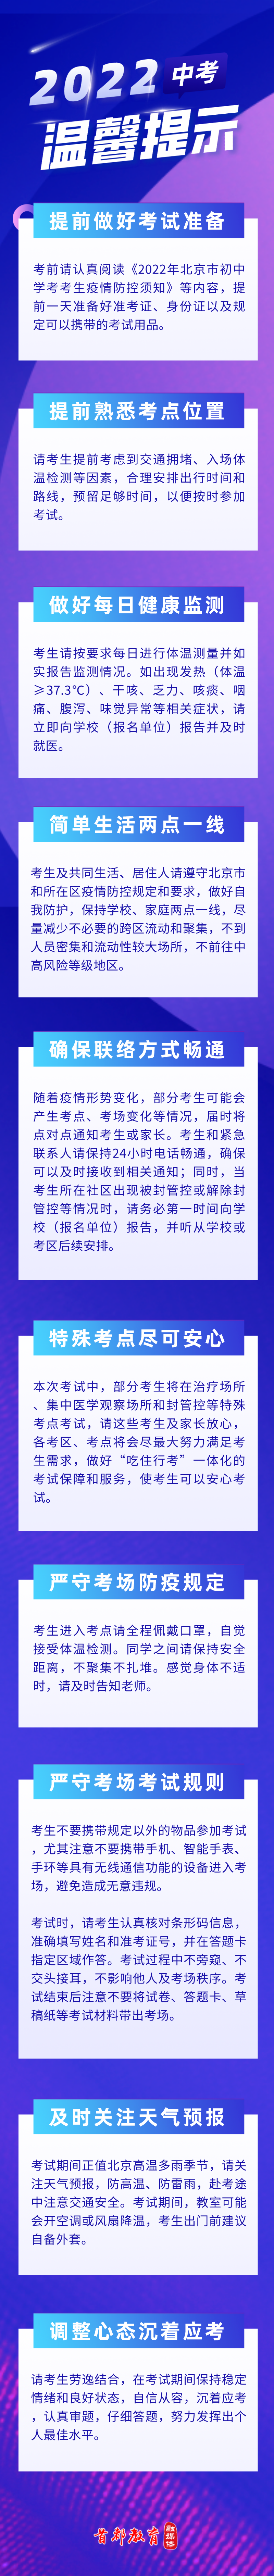 校友企业炎黄国芯、知存科技入选第五届中国IC独角兽榜单